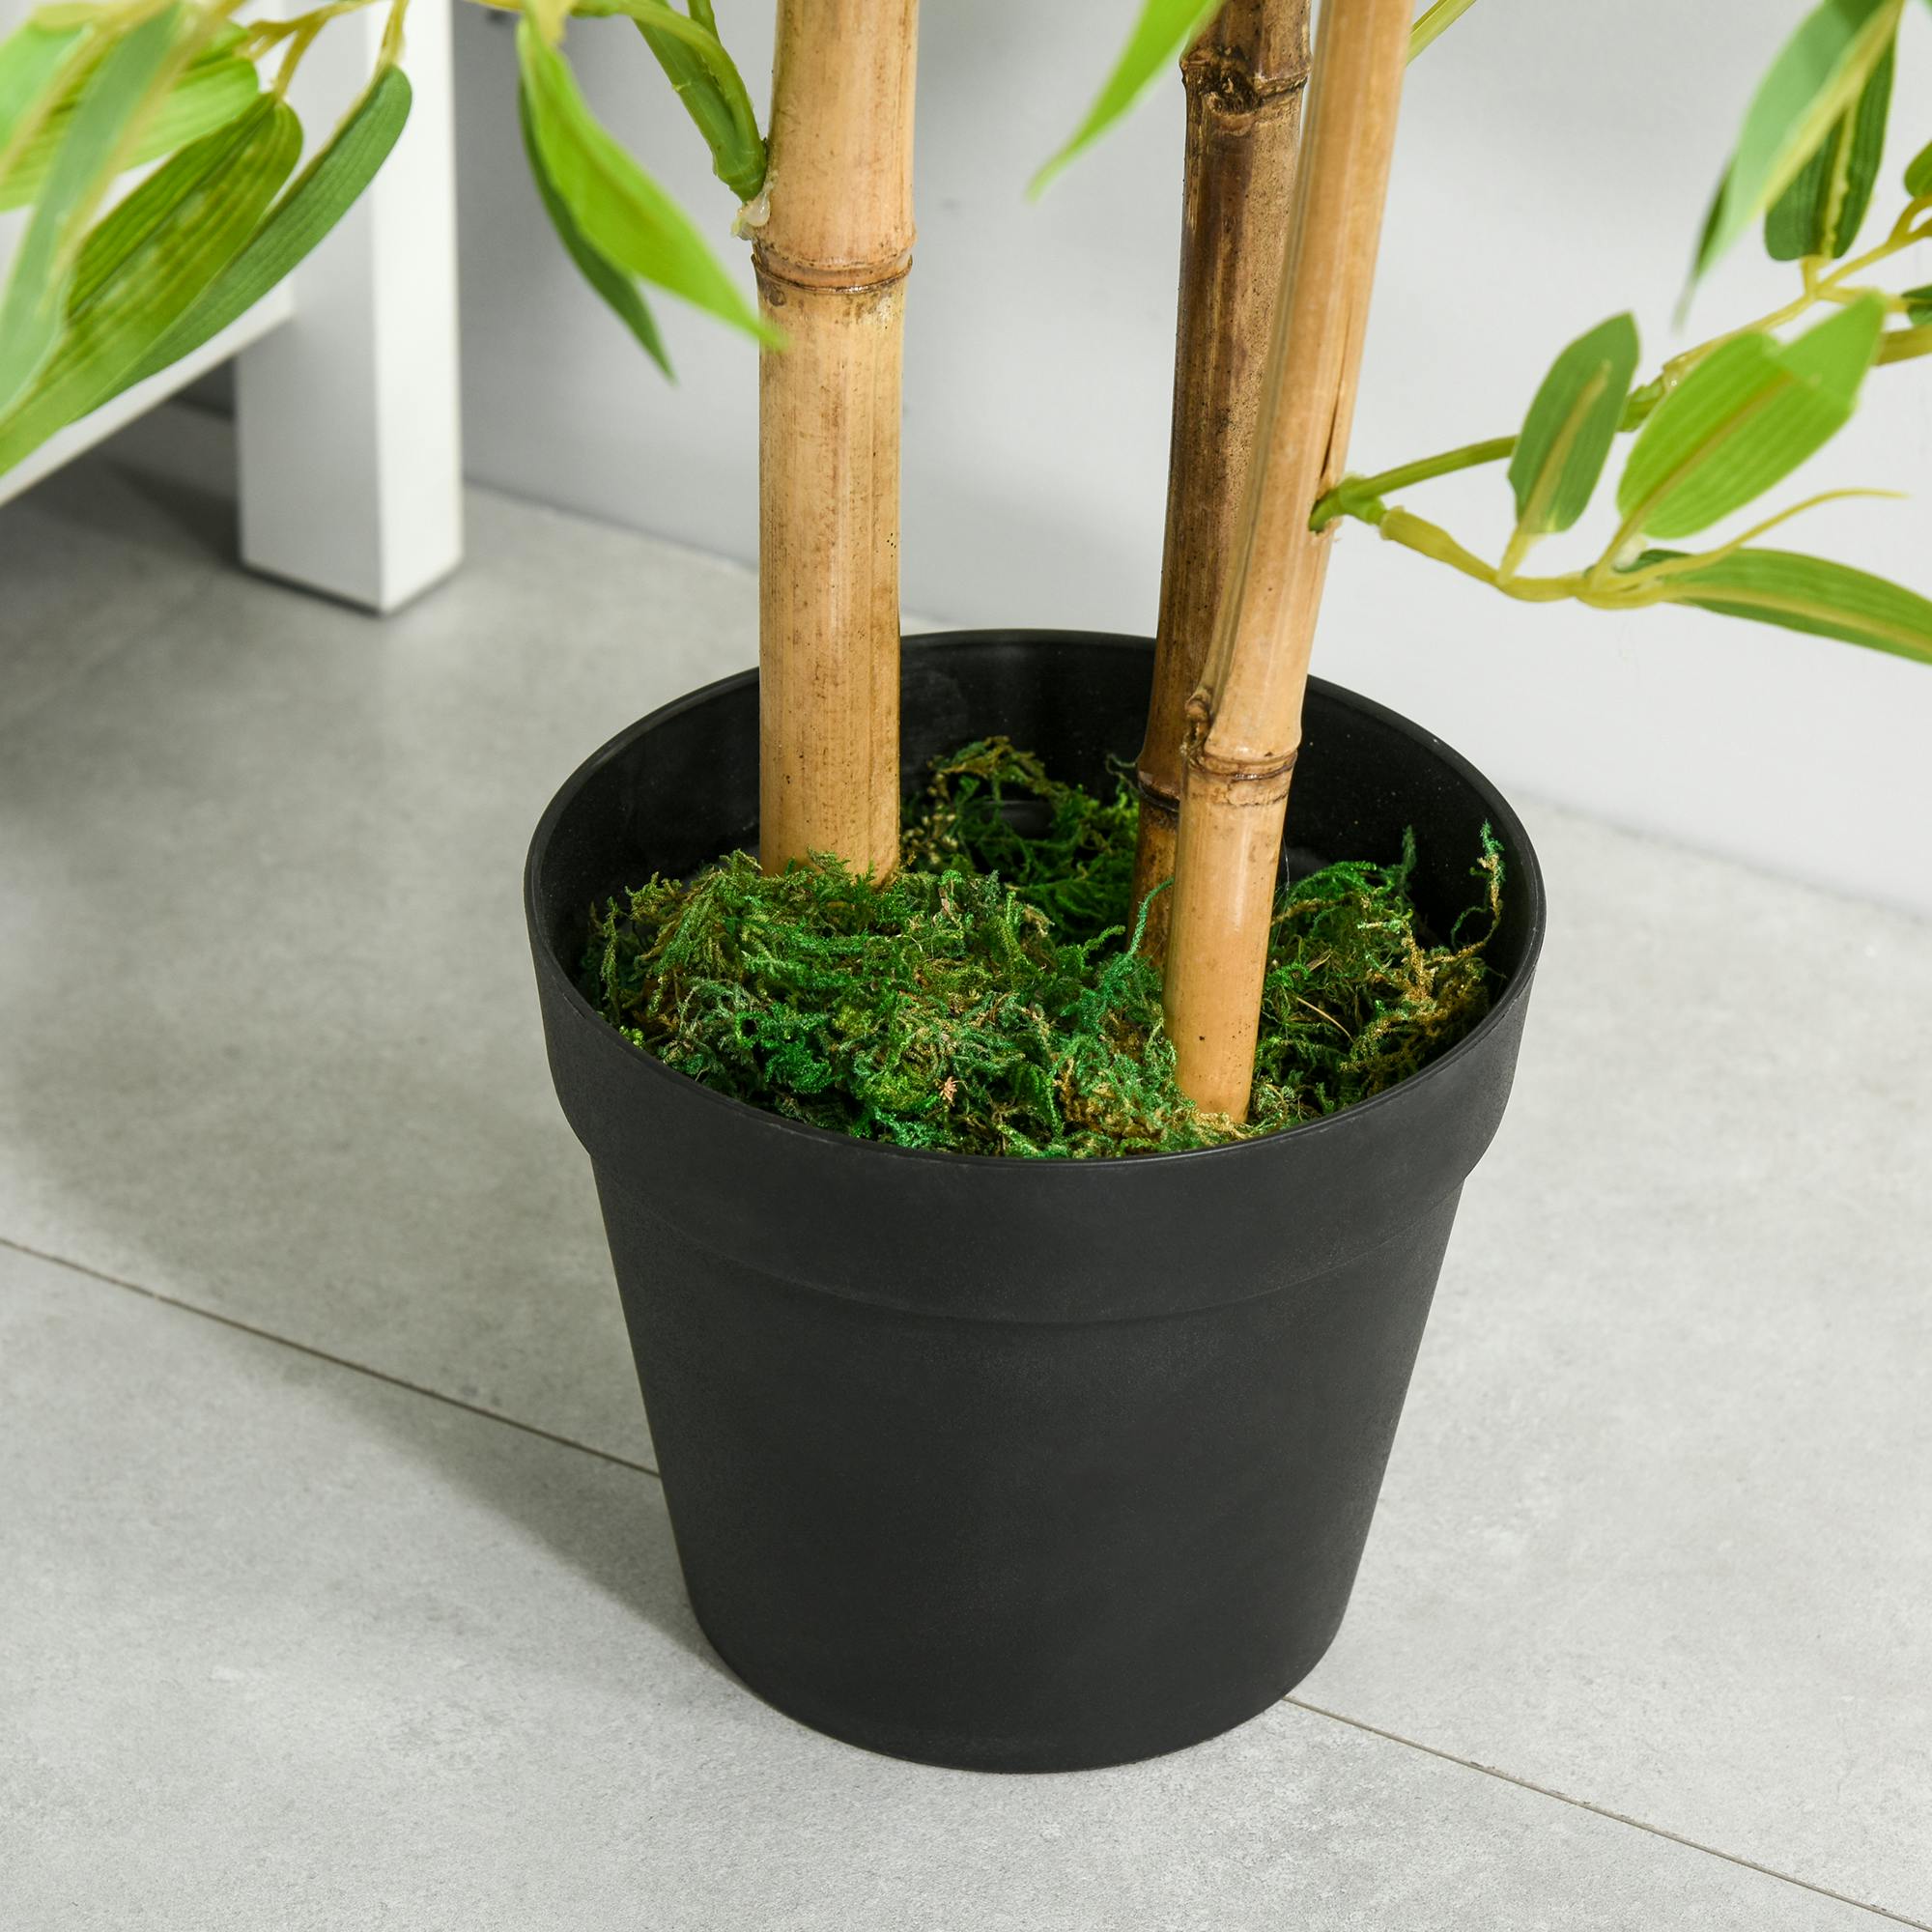 Outsunny Árbol de Bambú Artificial en Maceta 120 cm Planta